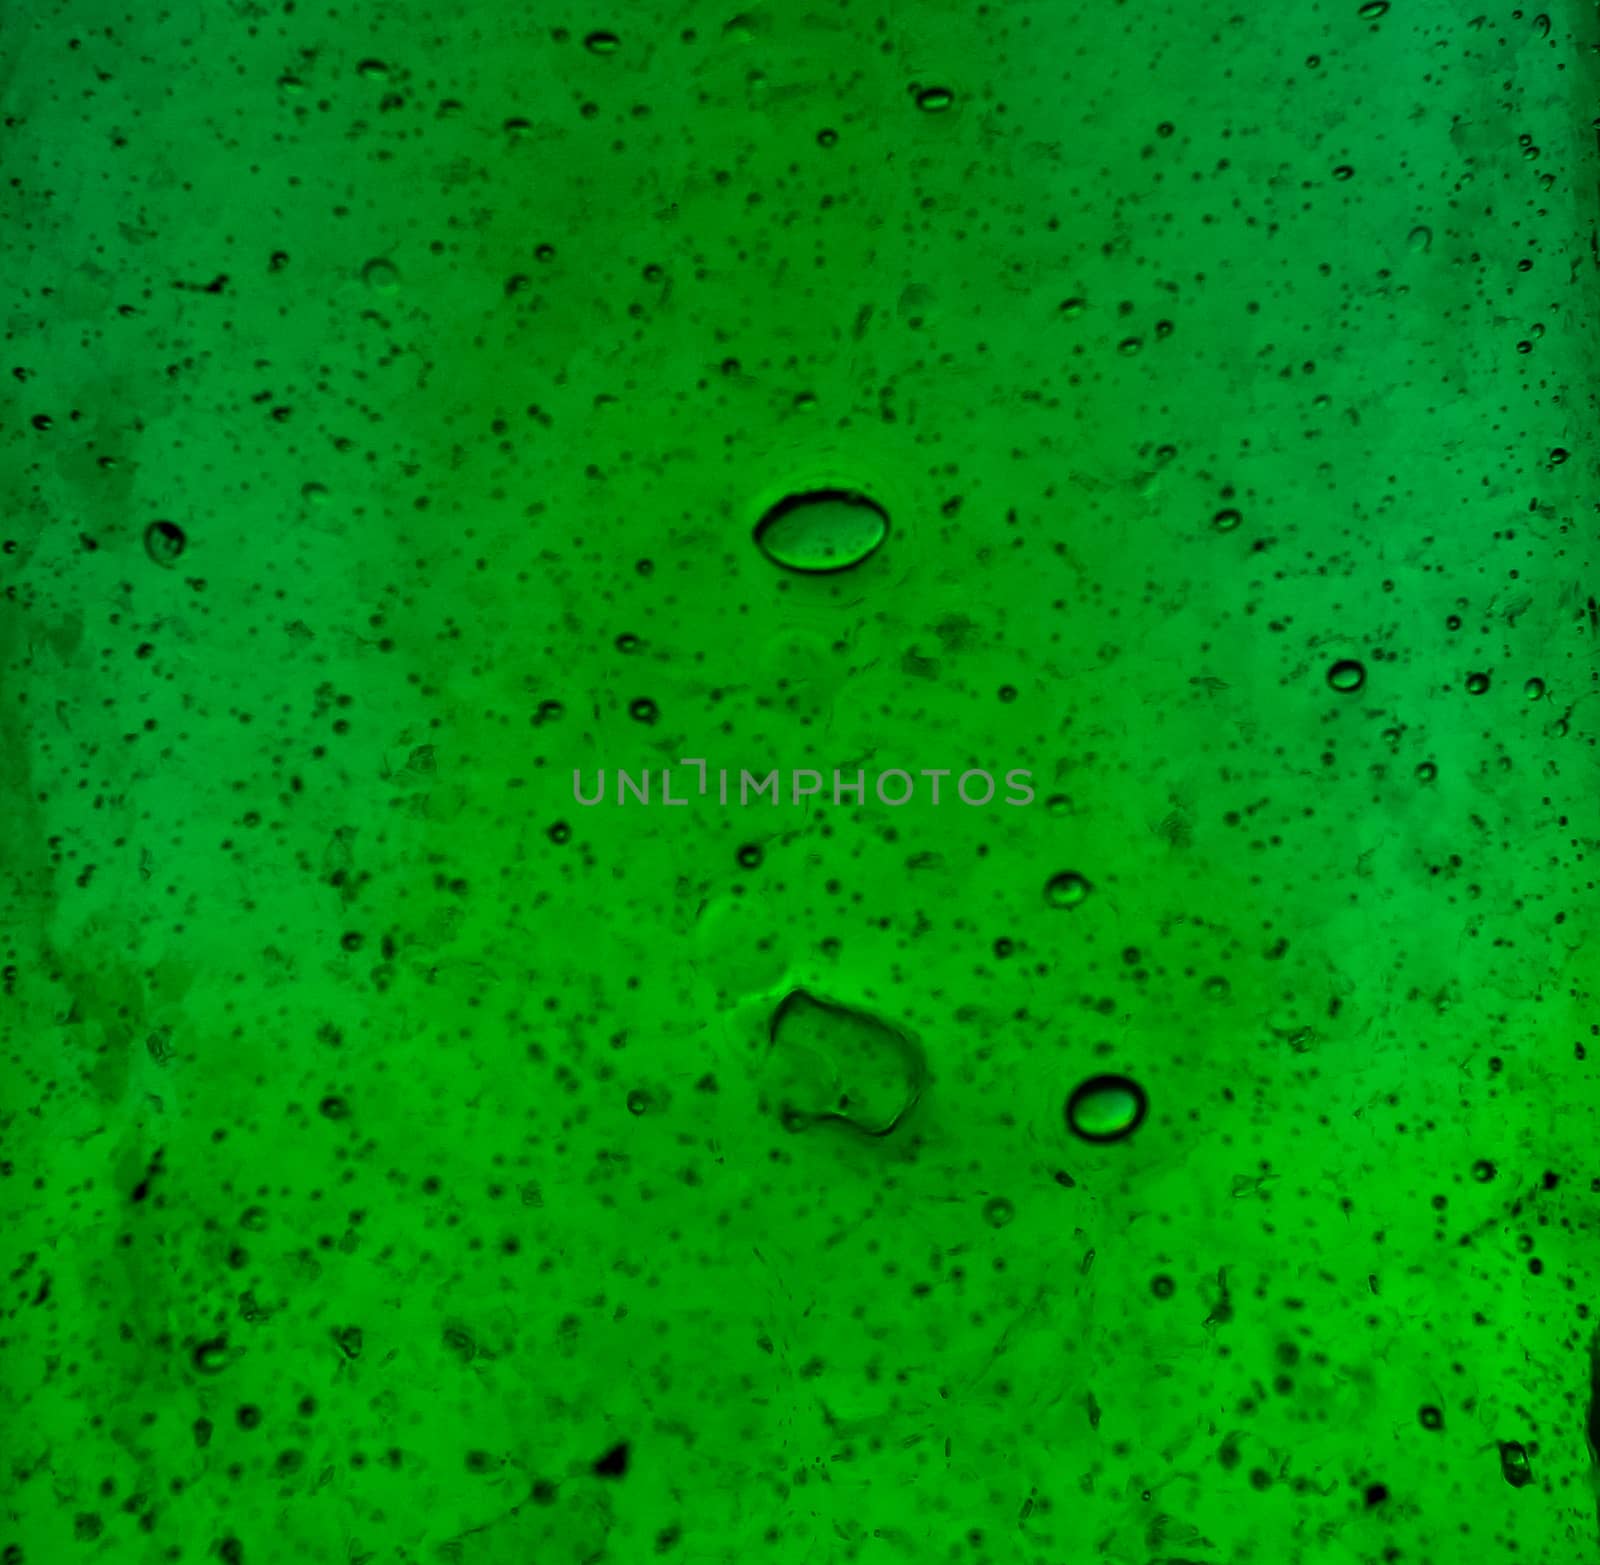 Texture of green glass bottles